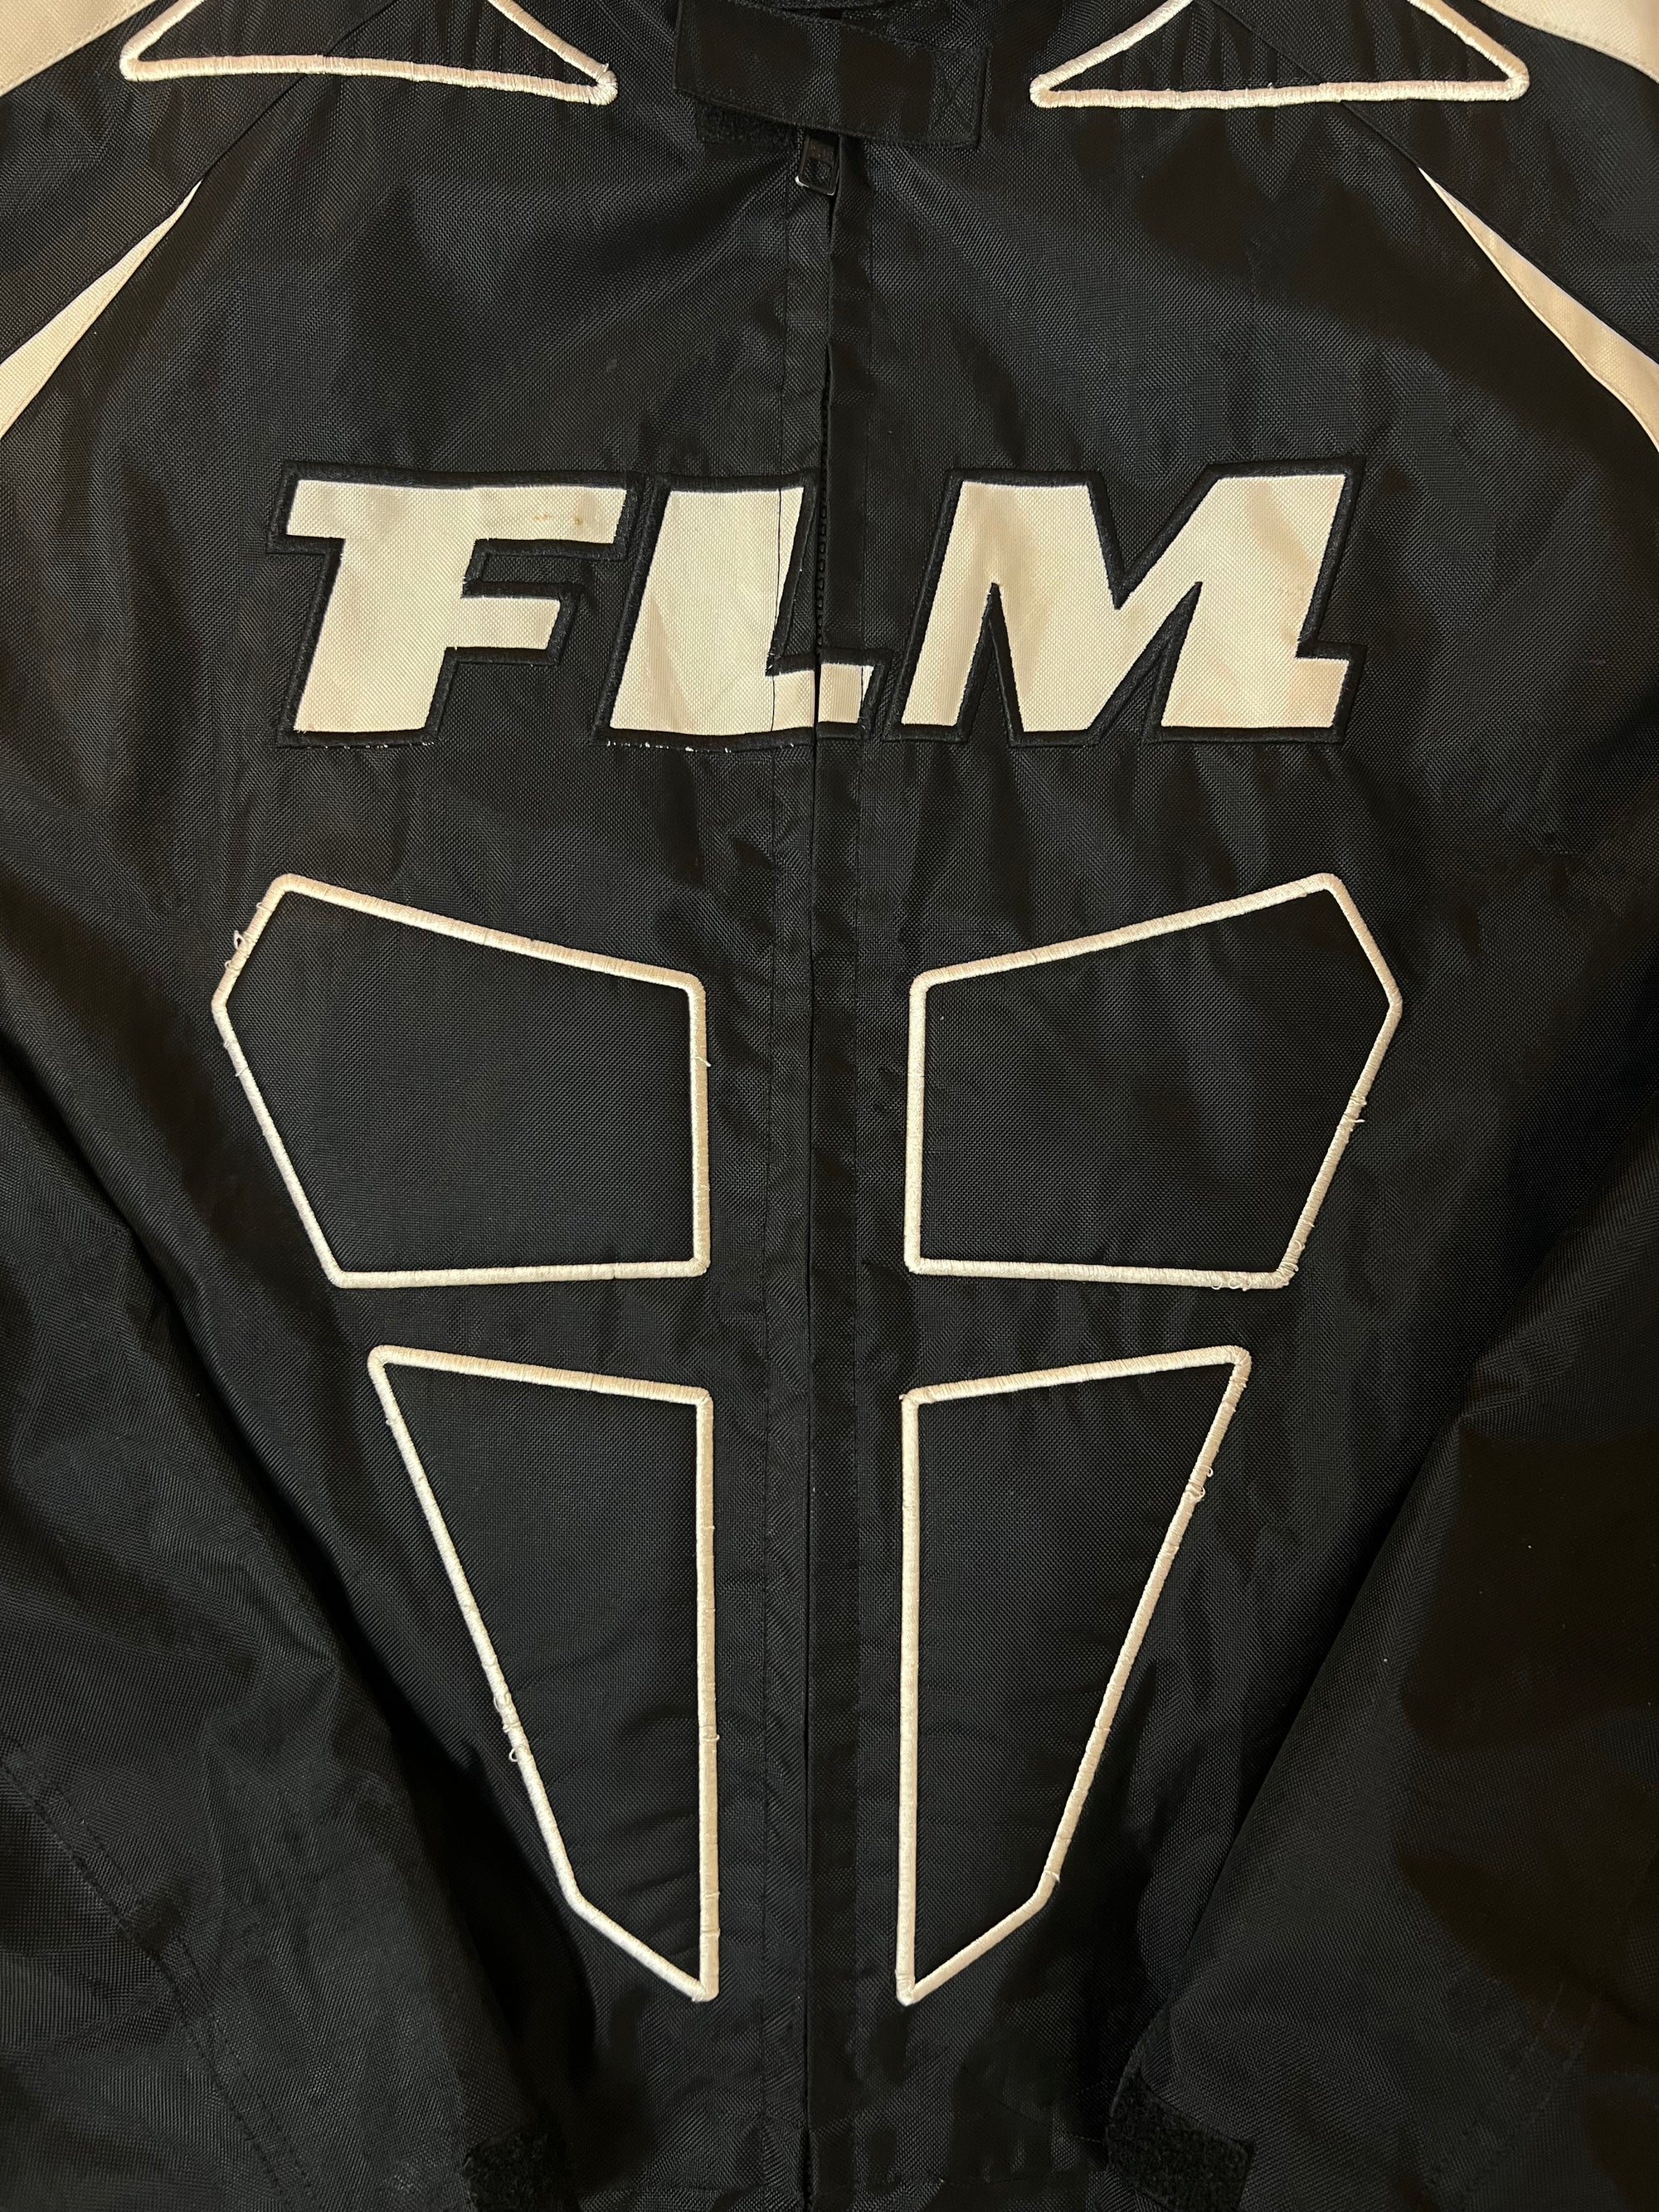 Produkt Bild Vintage FLM Racing Jacket Detail Logo